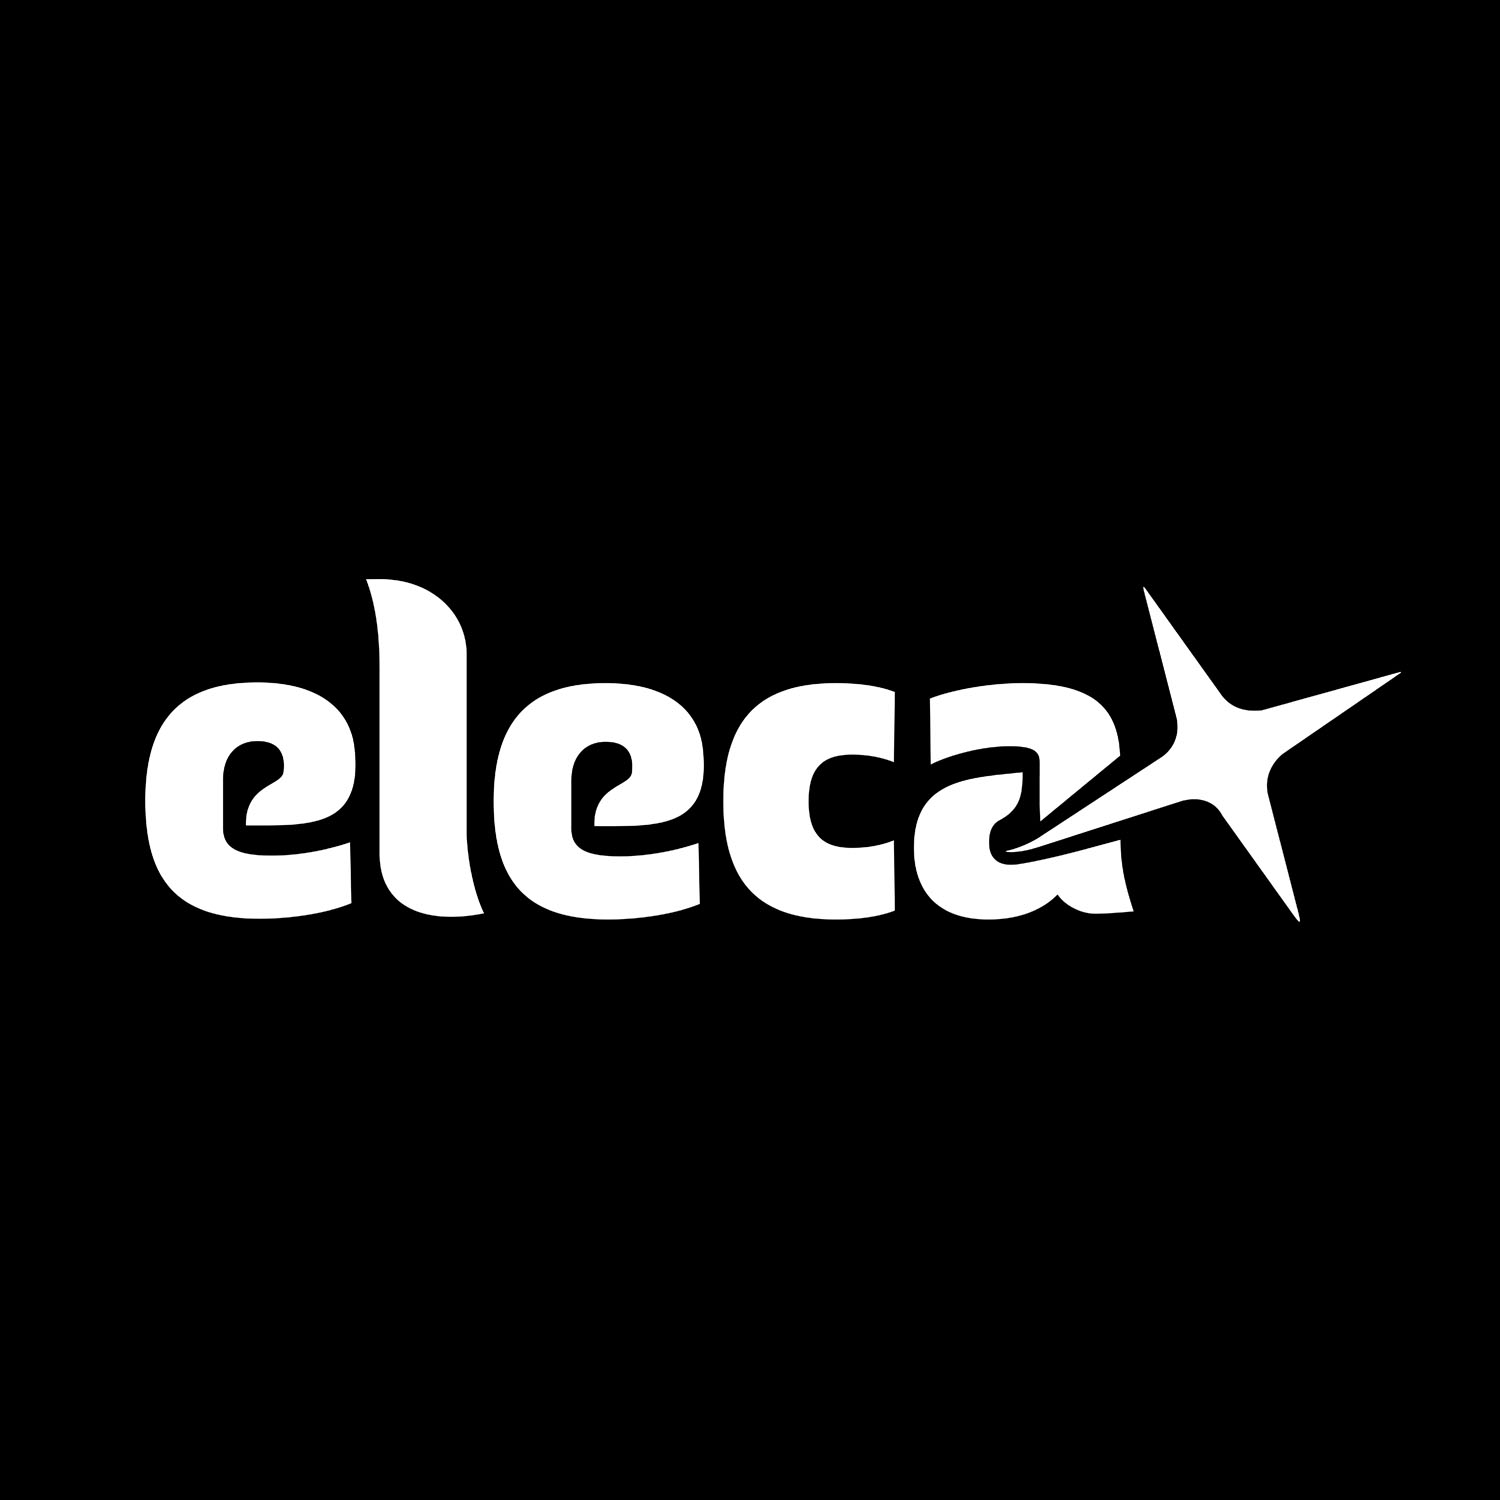 Logo, Eleca, made by Therwiz Design